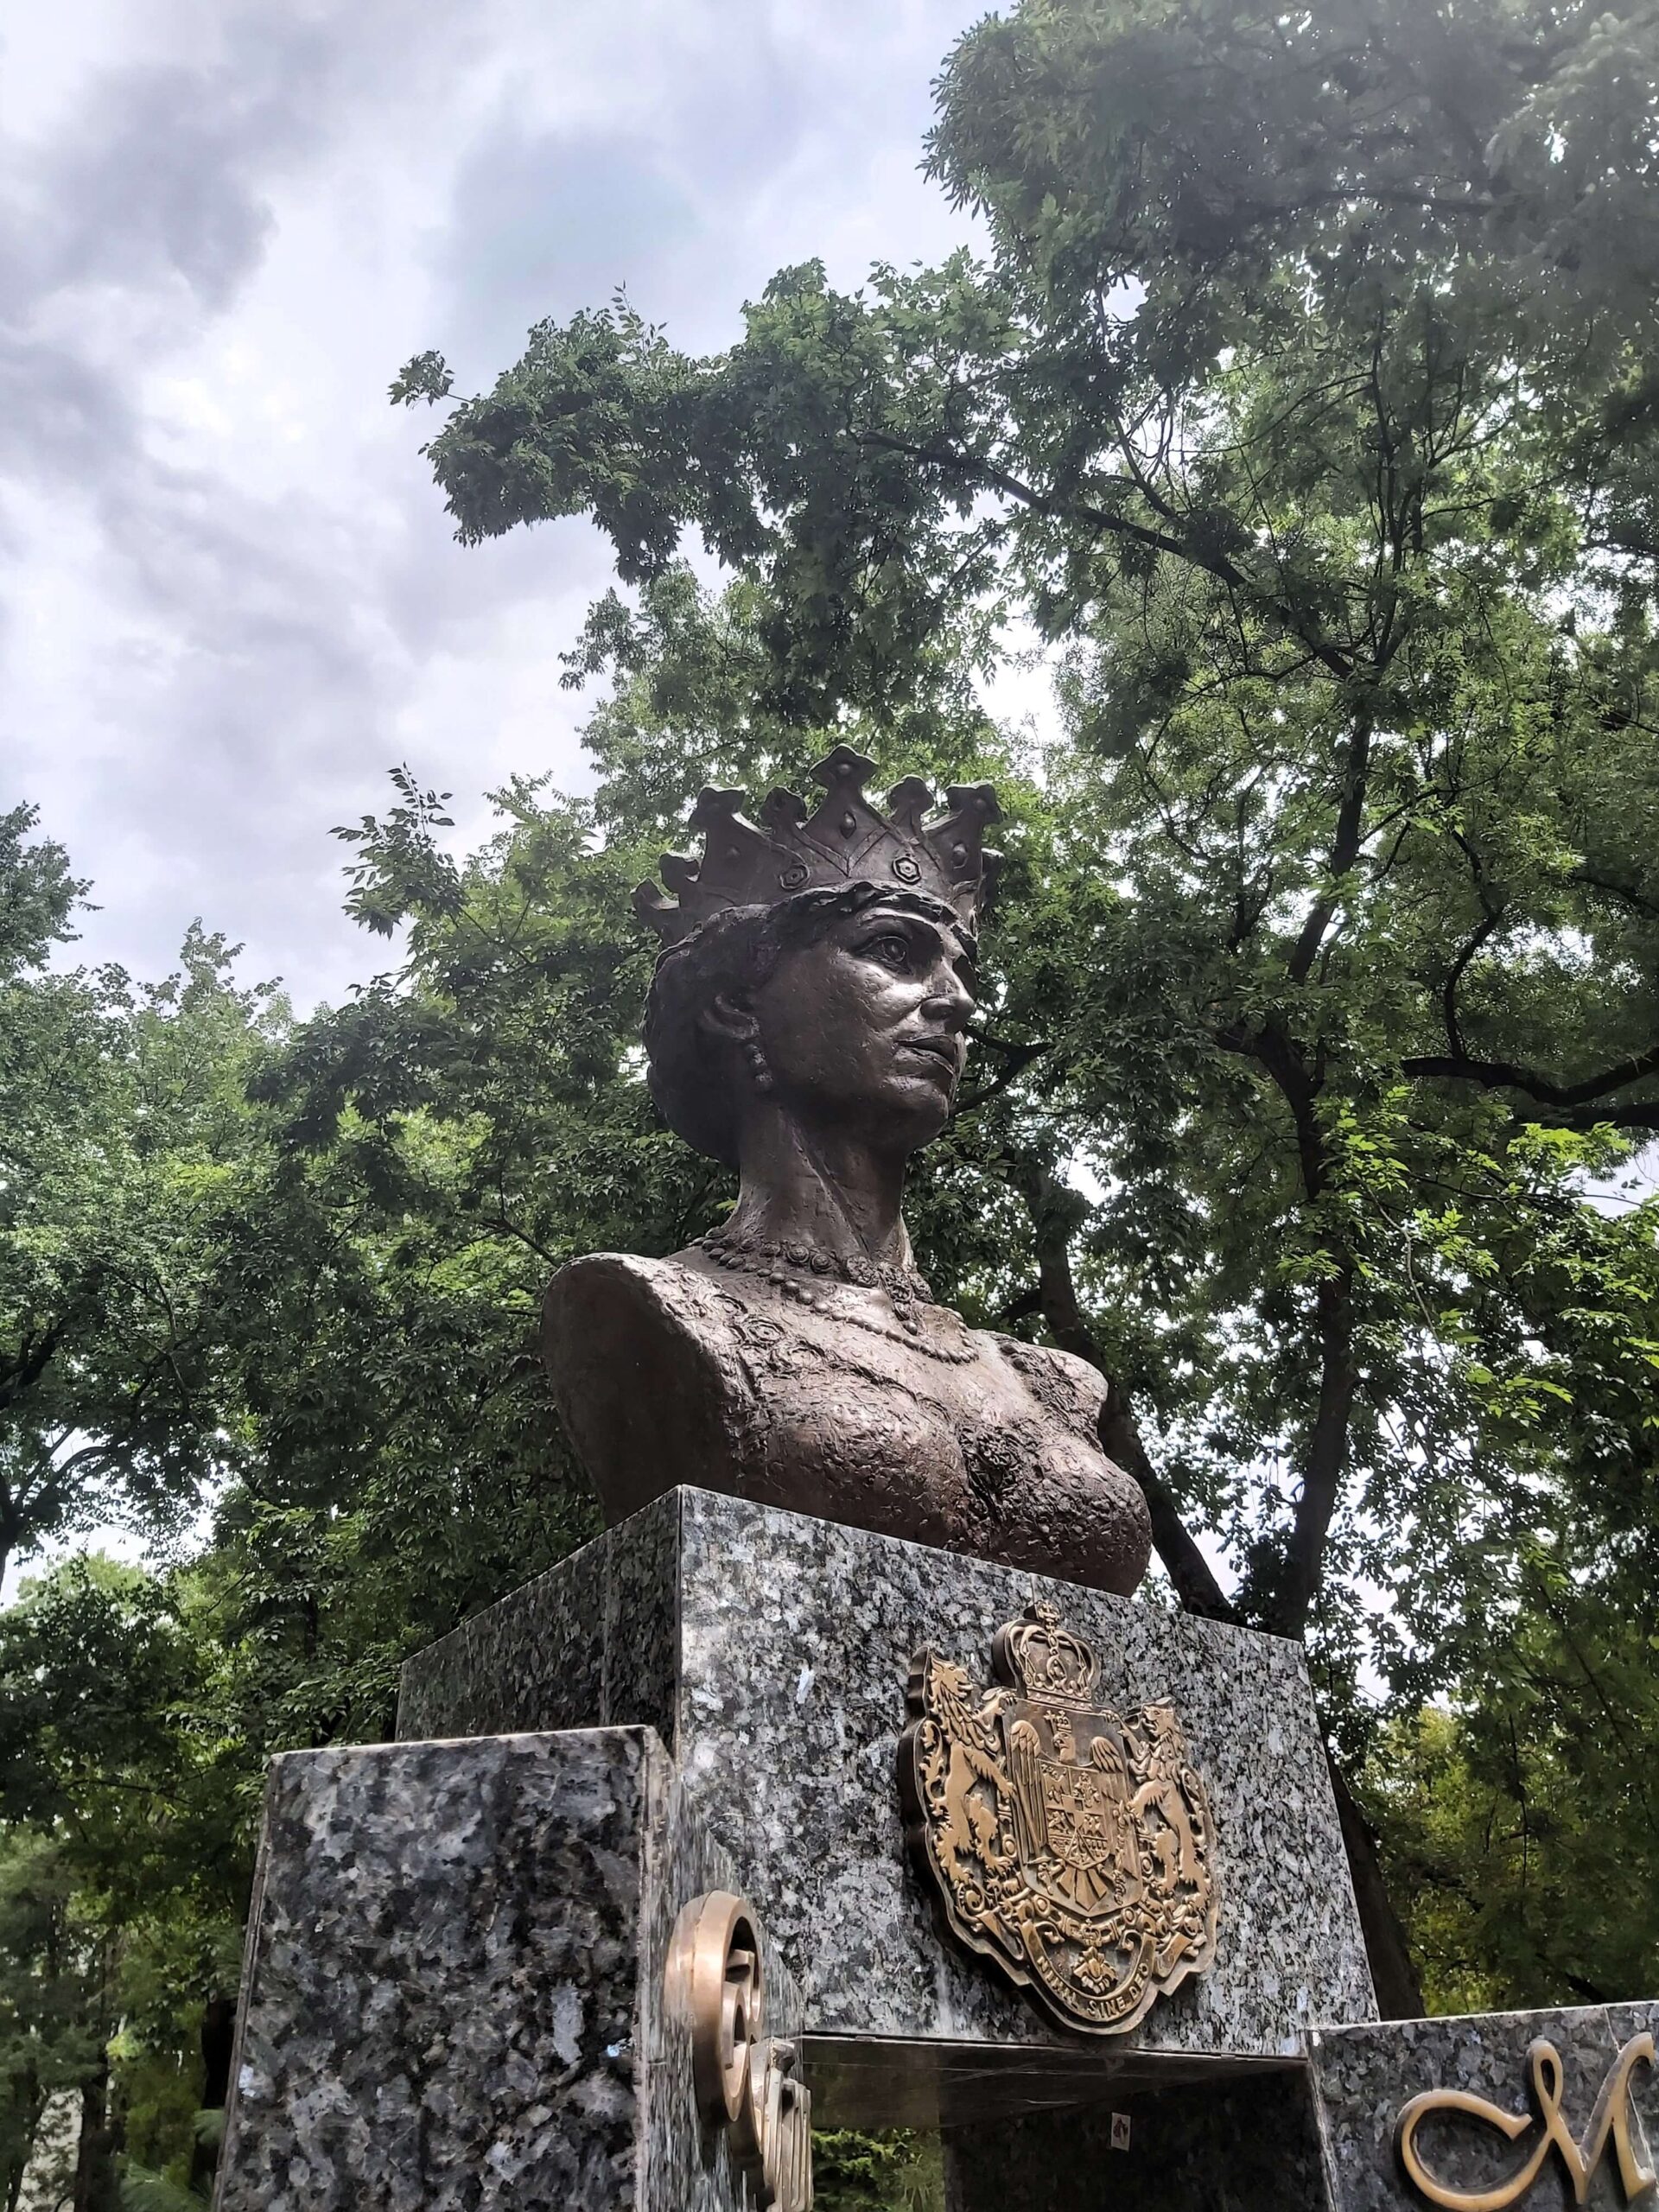 Queen bust statue in Timisoara, Romania